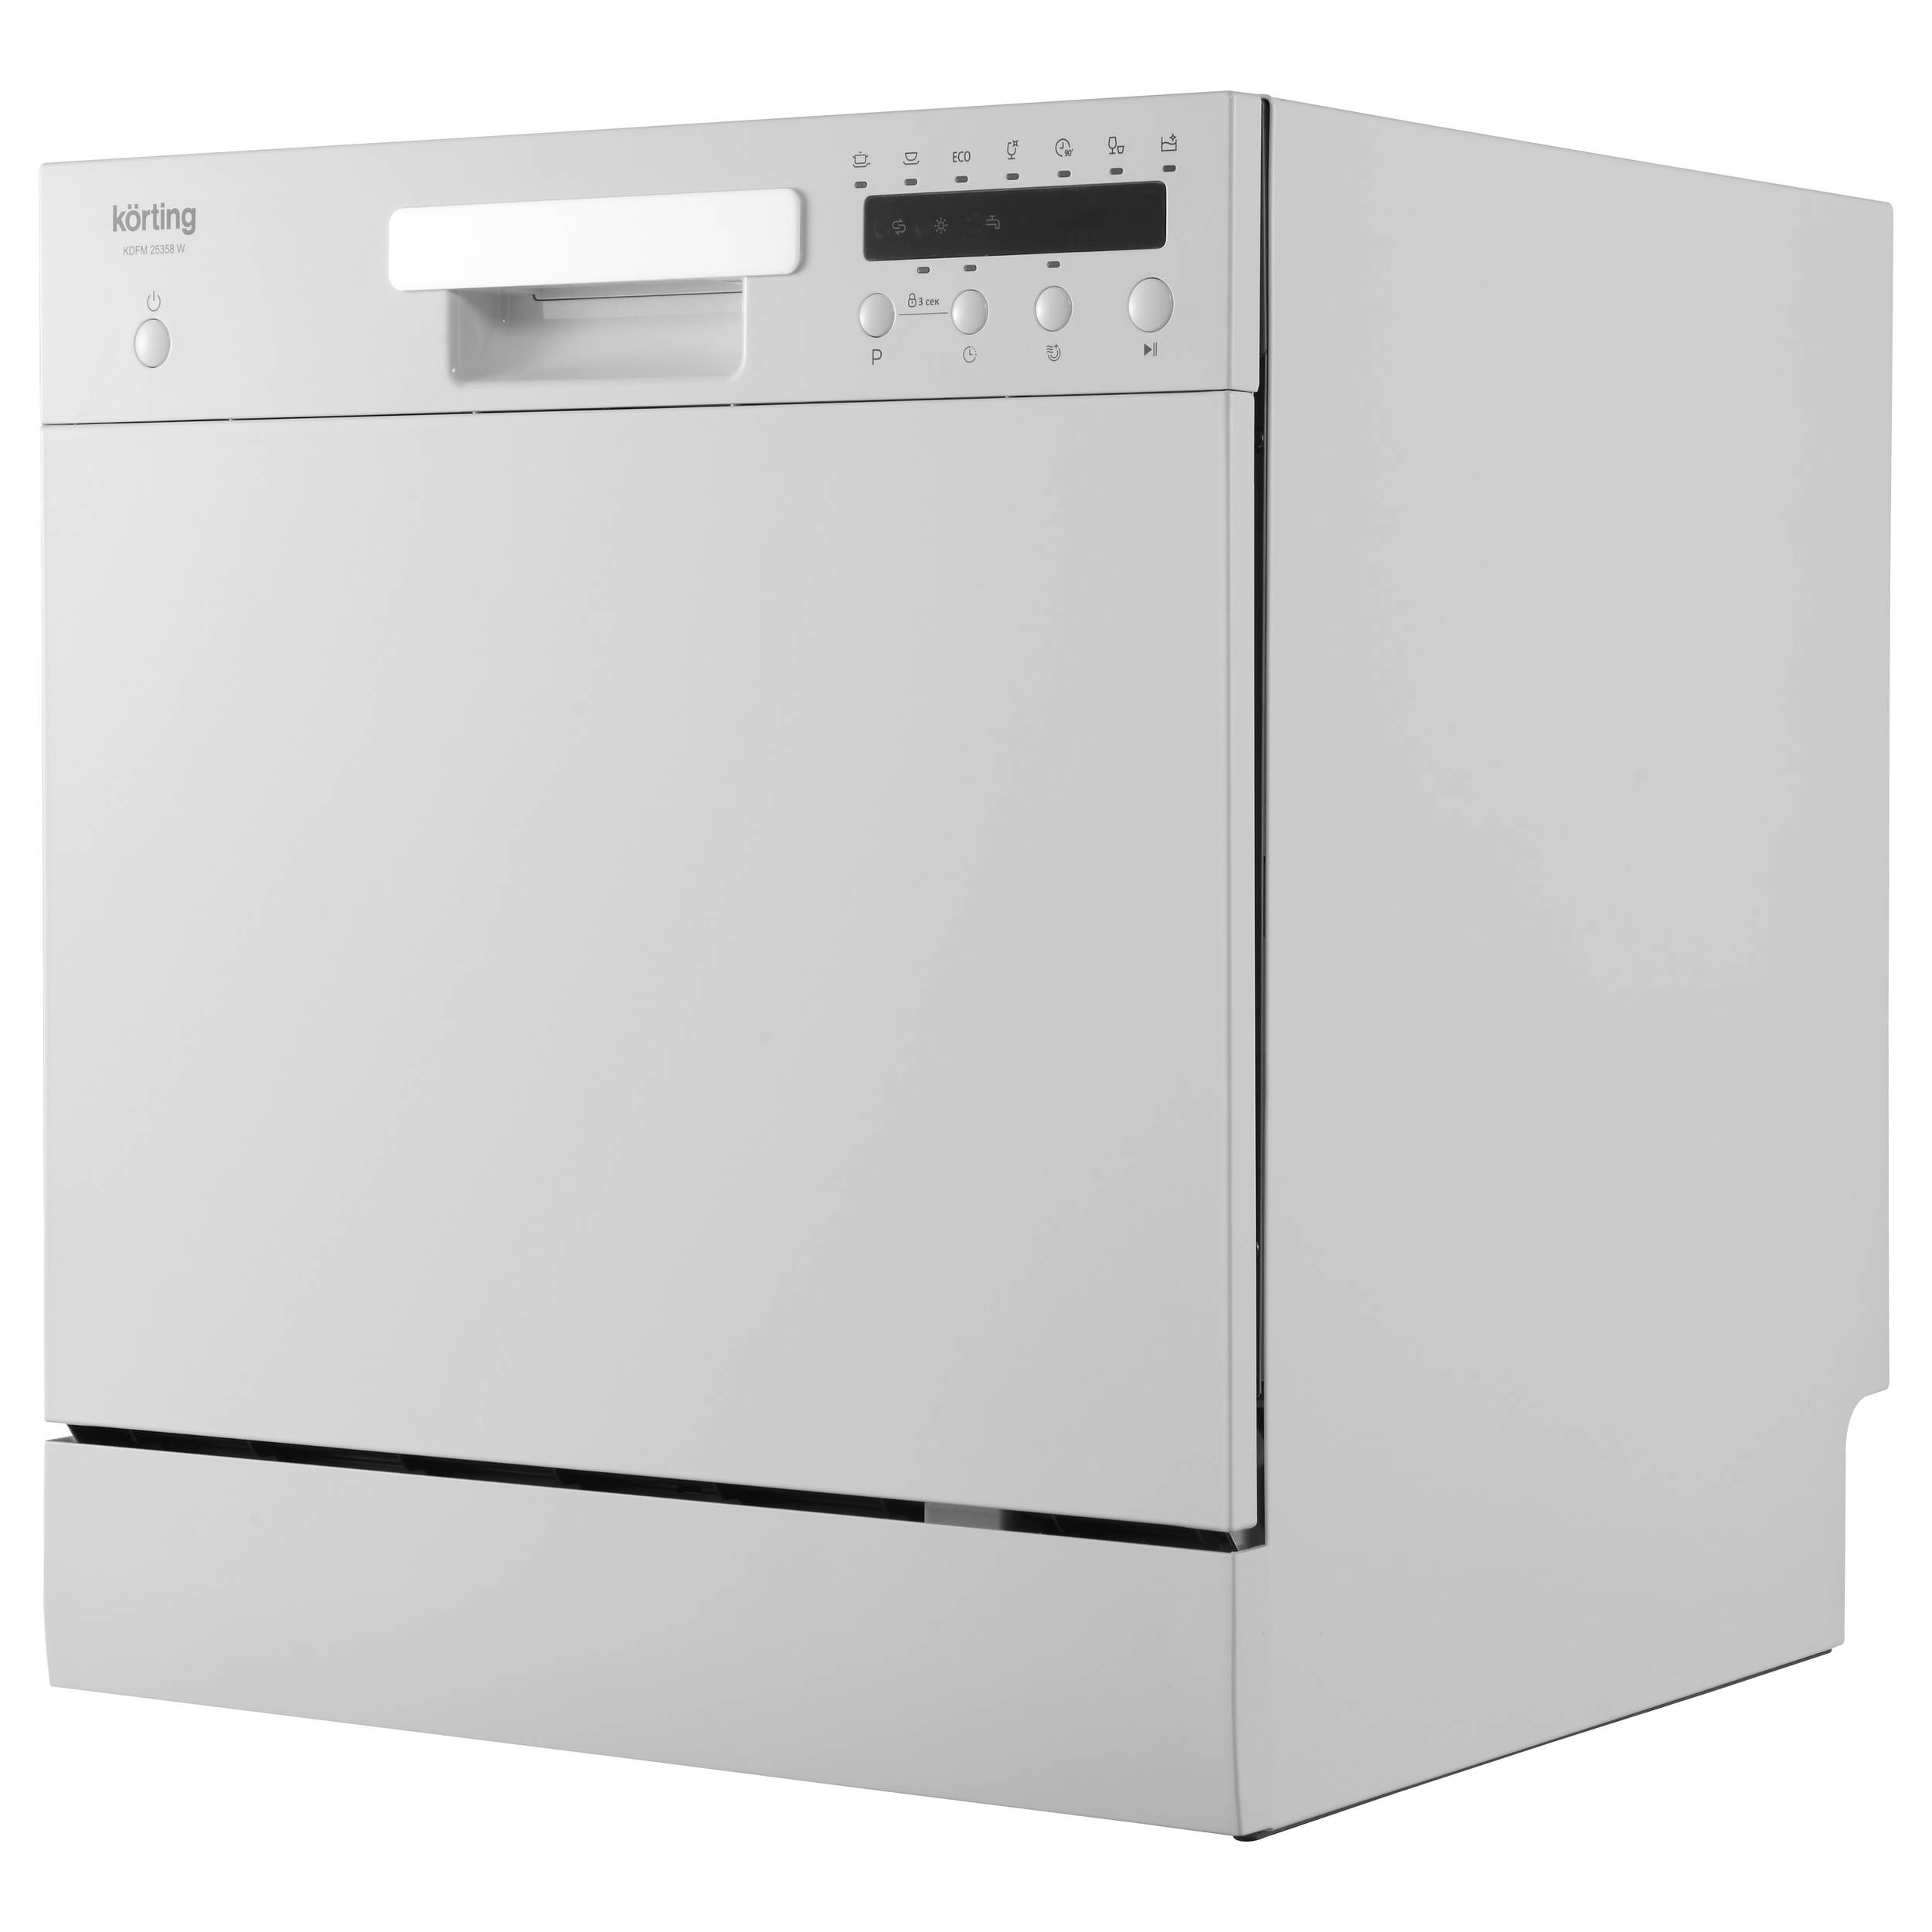 Посудомоечная машина Korting KDFM 25358 W белый посудомоечная машина korting kdf 45578 белая